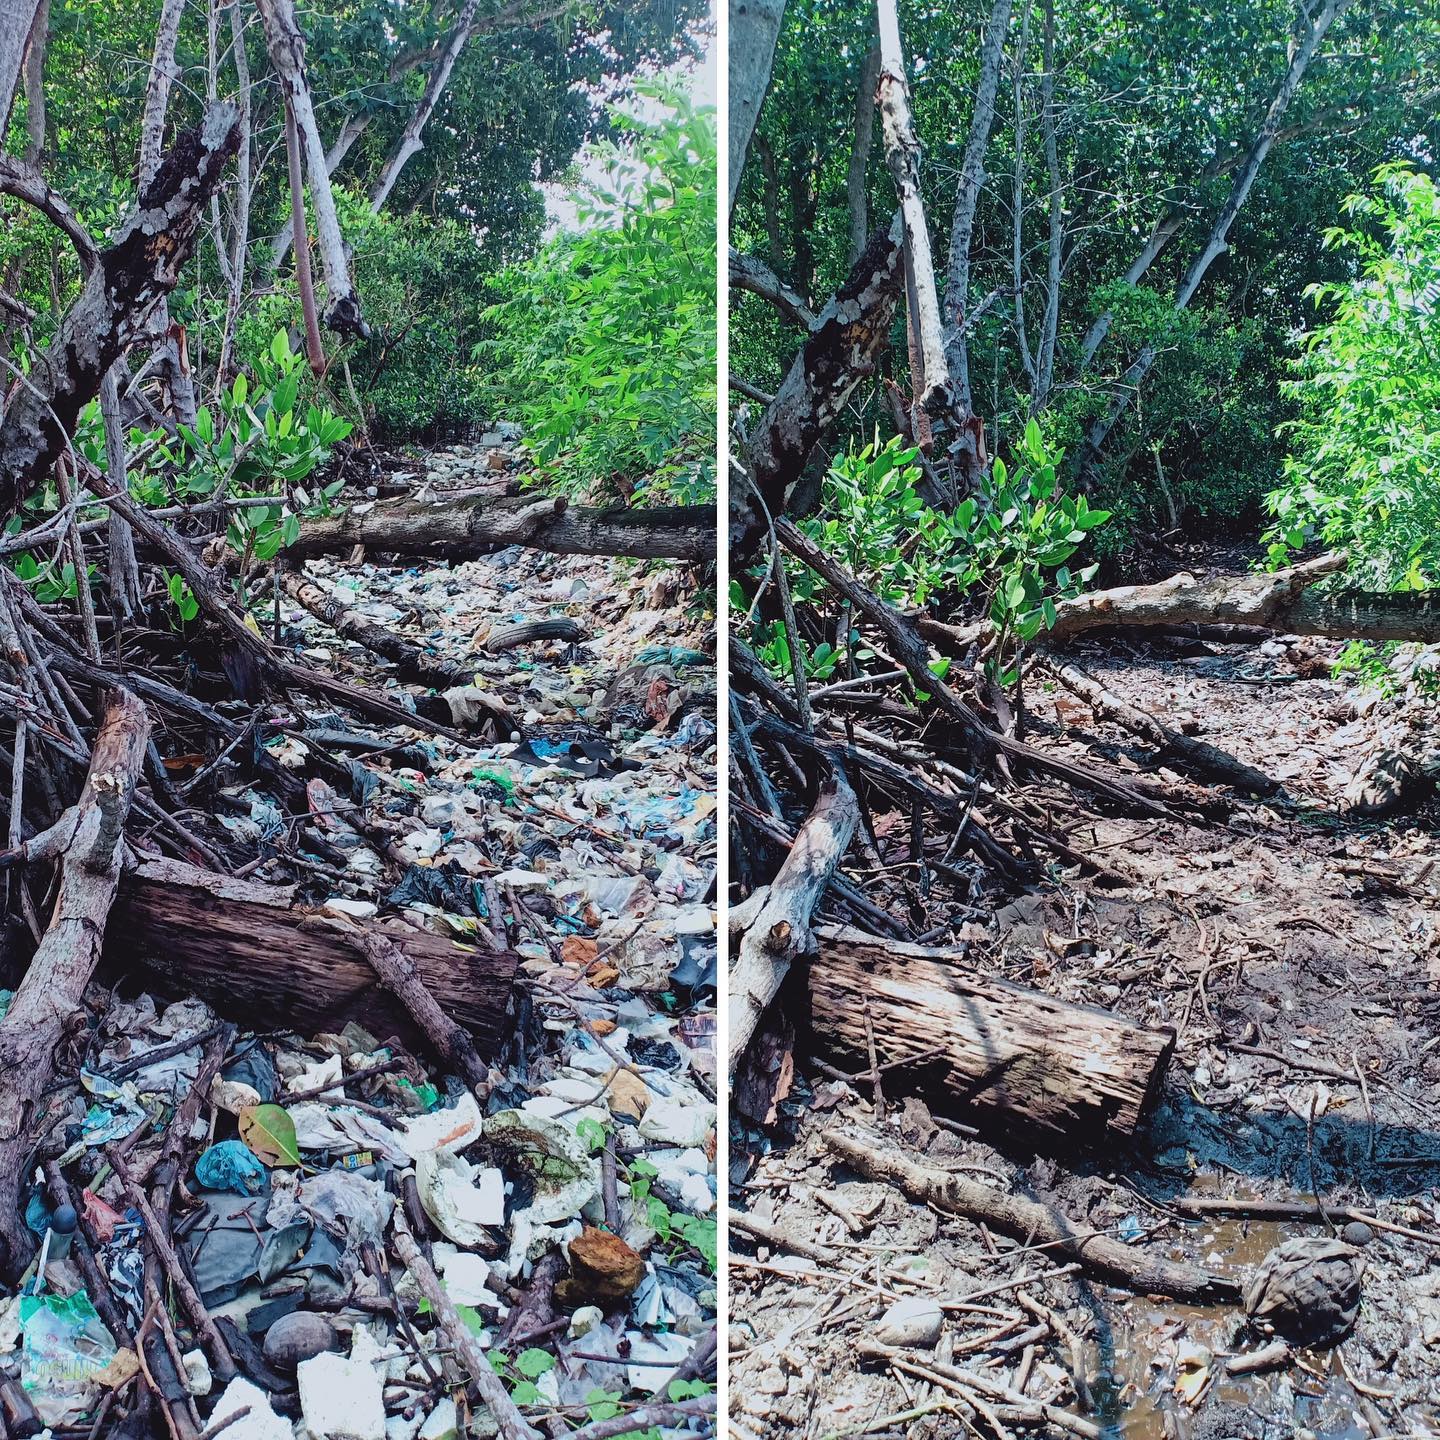 Sungai Watch organiza limpiezas de emergencia en vertederos ilegales y a lo largo de las riberas de los ríos para evitar que los plásticos lleguen a ellos, además de trabajar en la aplicación de una gestión adecuada de los residuos a nivel local.